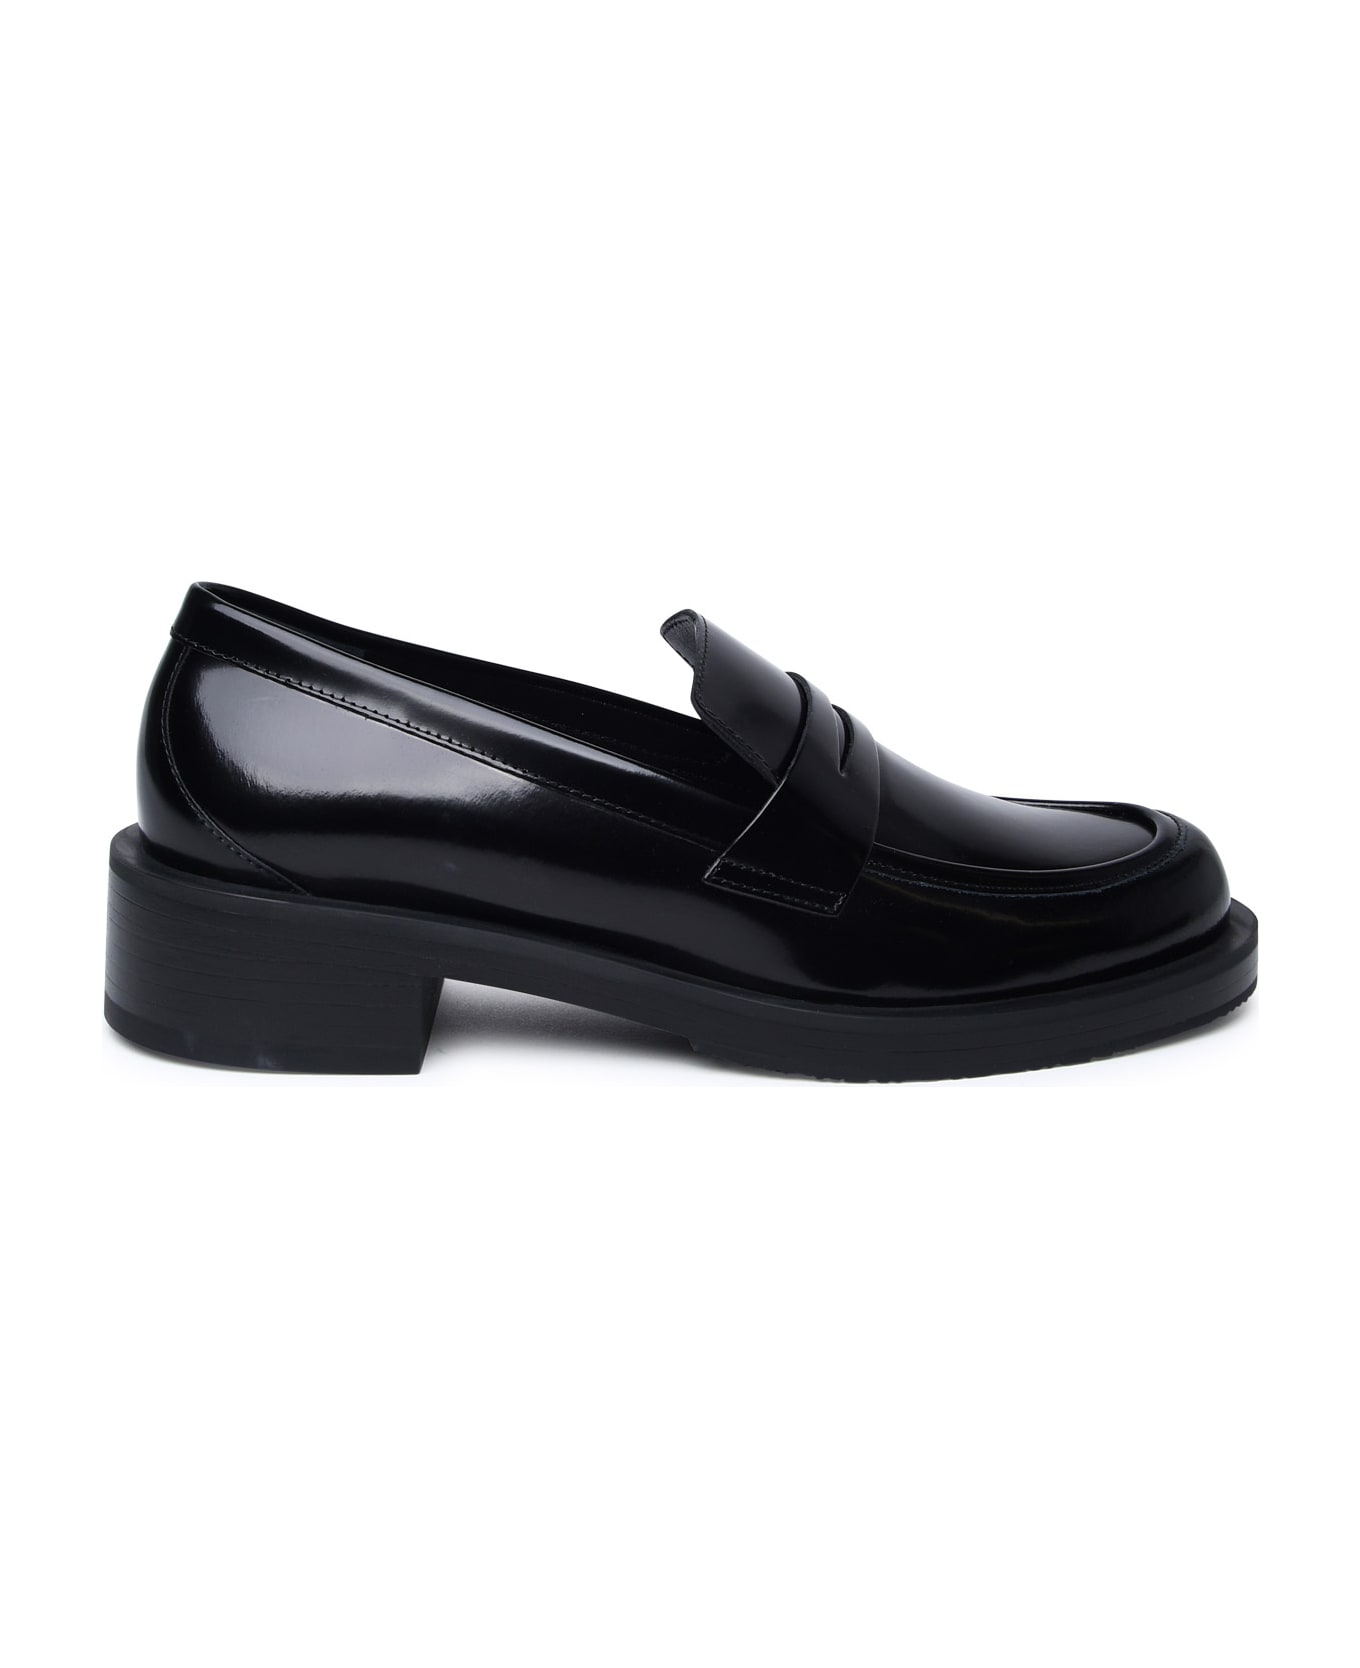 Stuart Weitzman Black Shiny Leather Loafers - Black ハイヒール